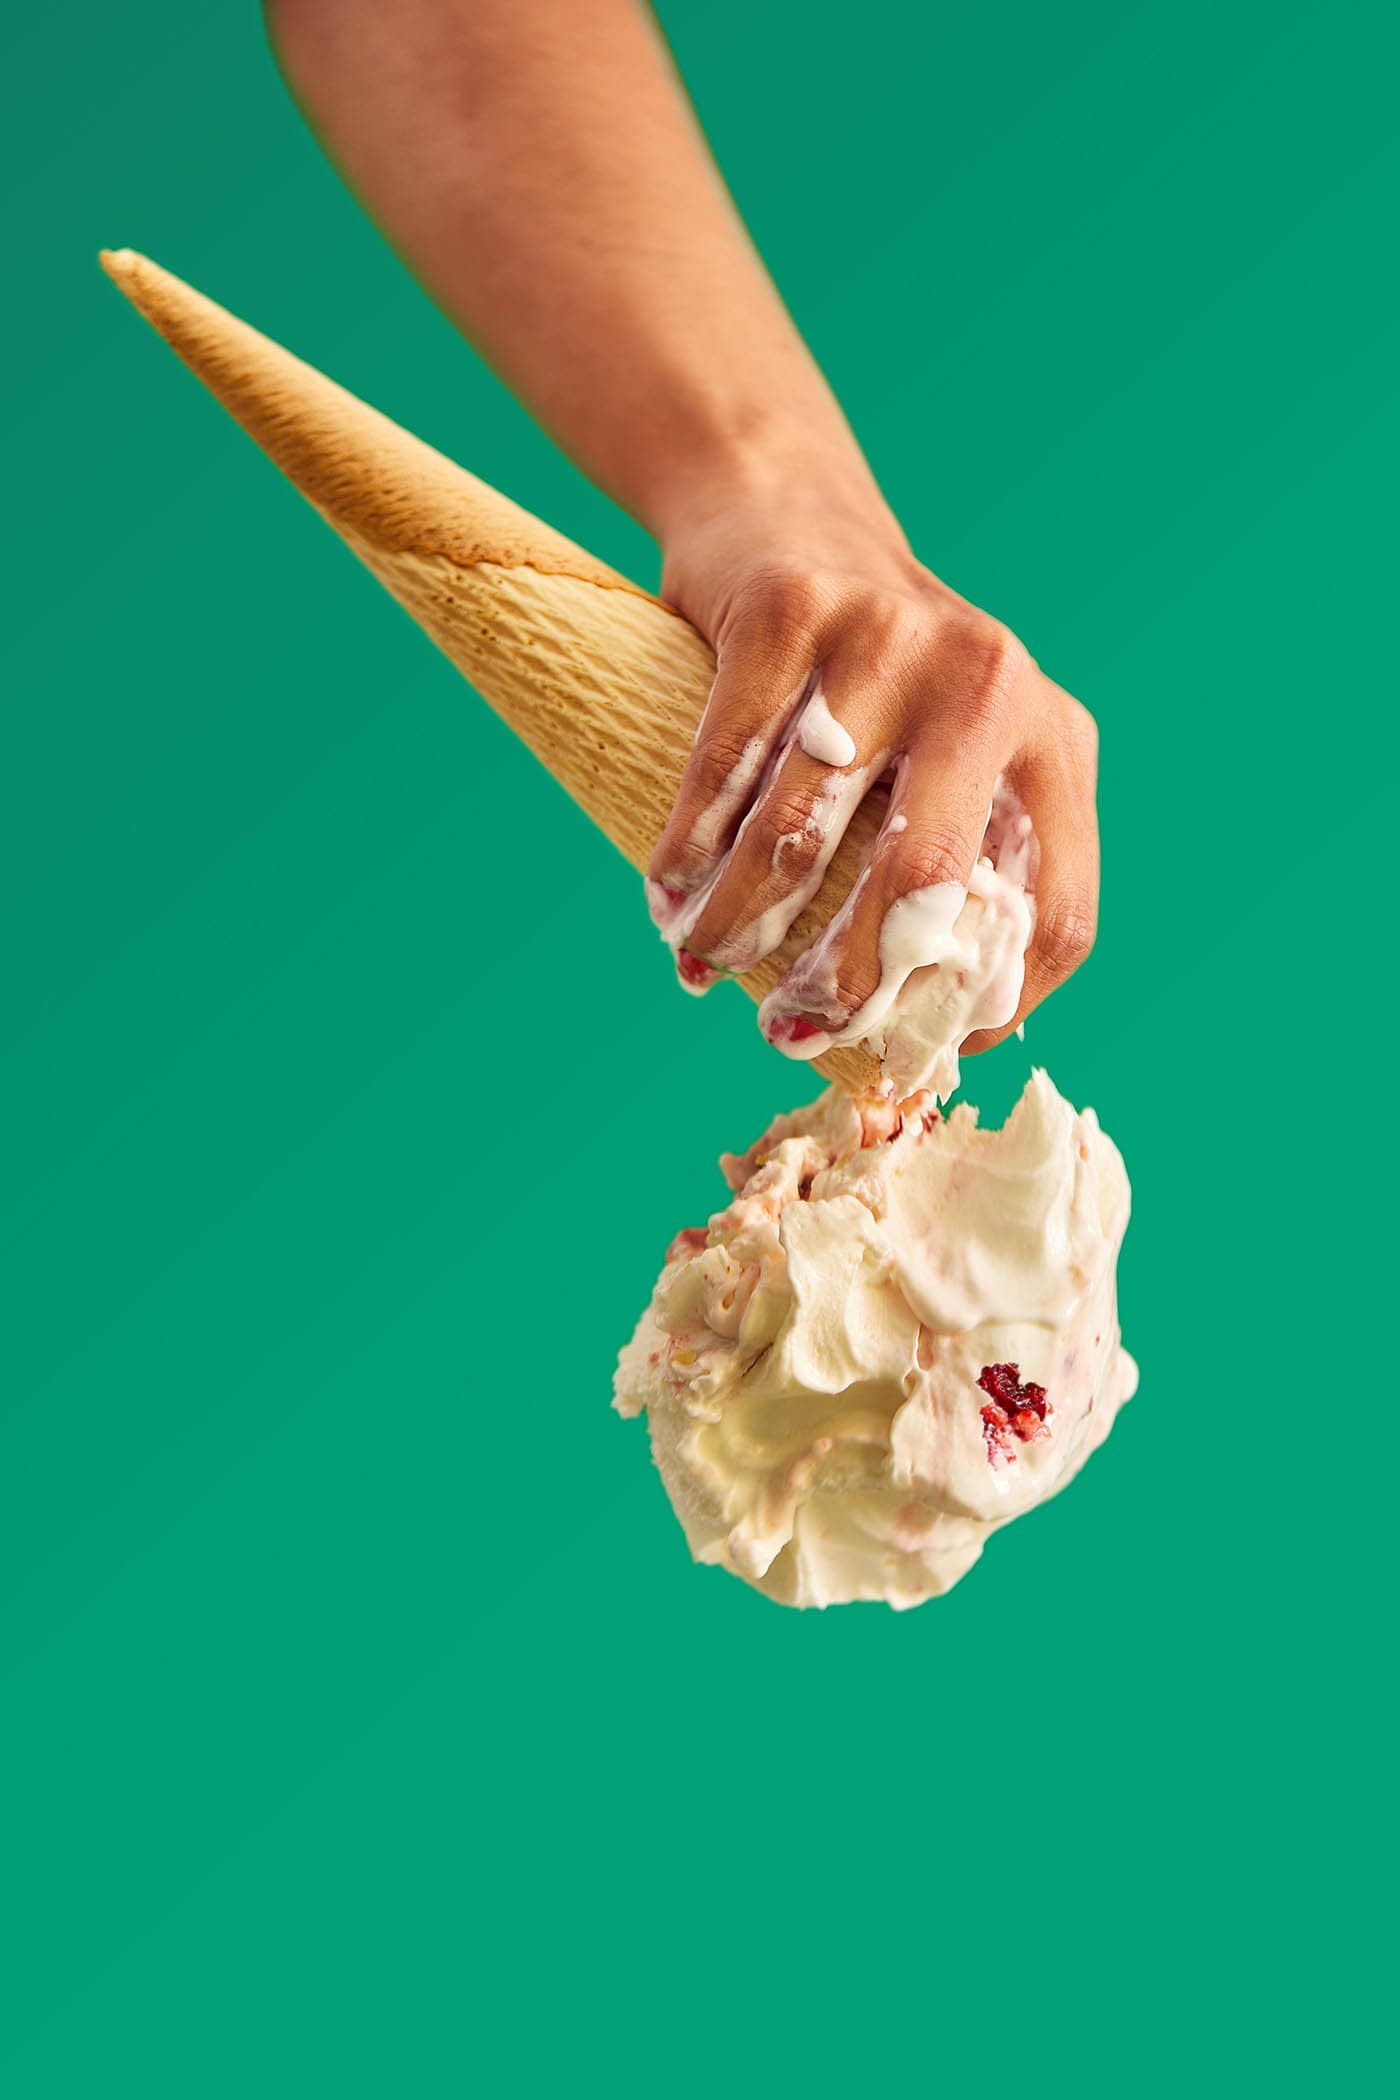 Diseño de branding, packaging, digital e interior para marca de helados en Benifaió